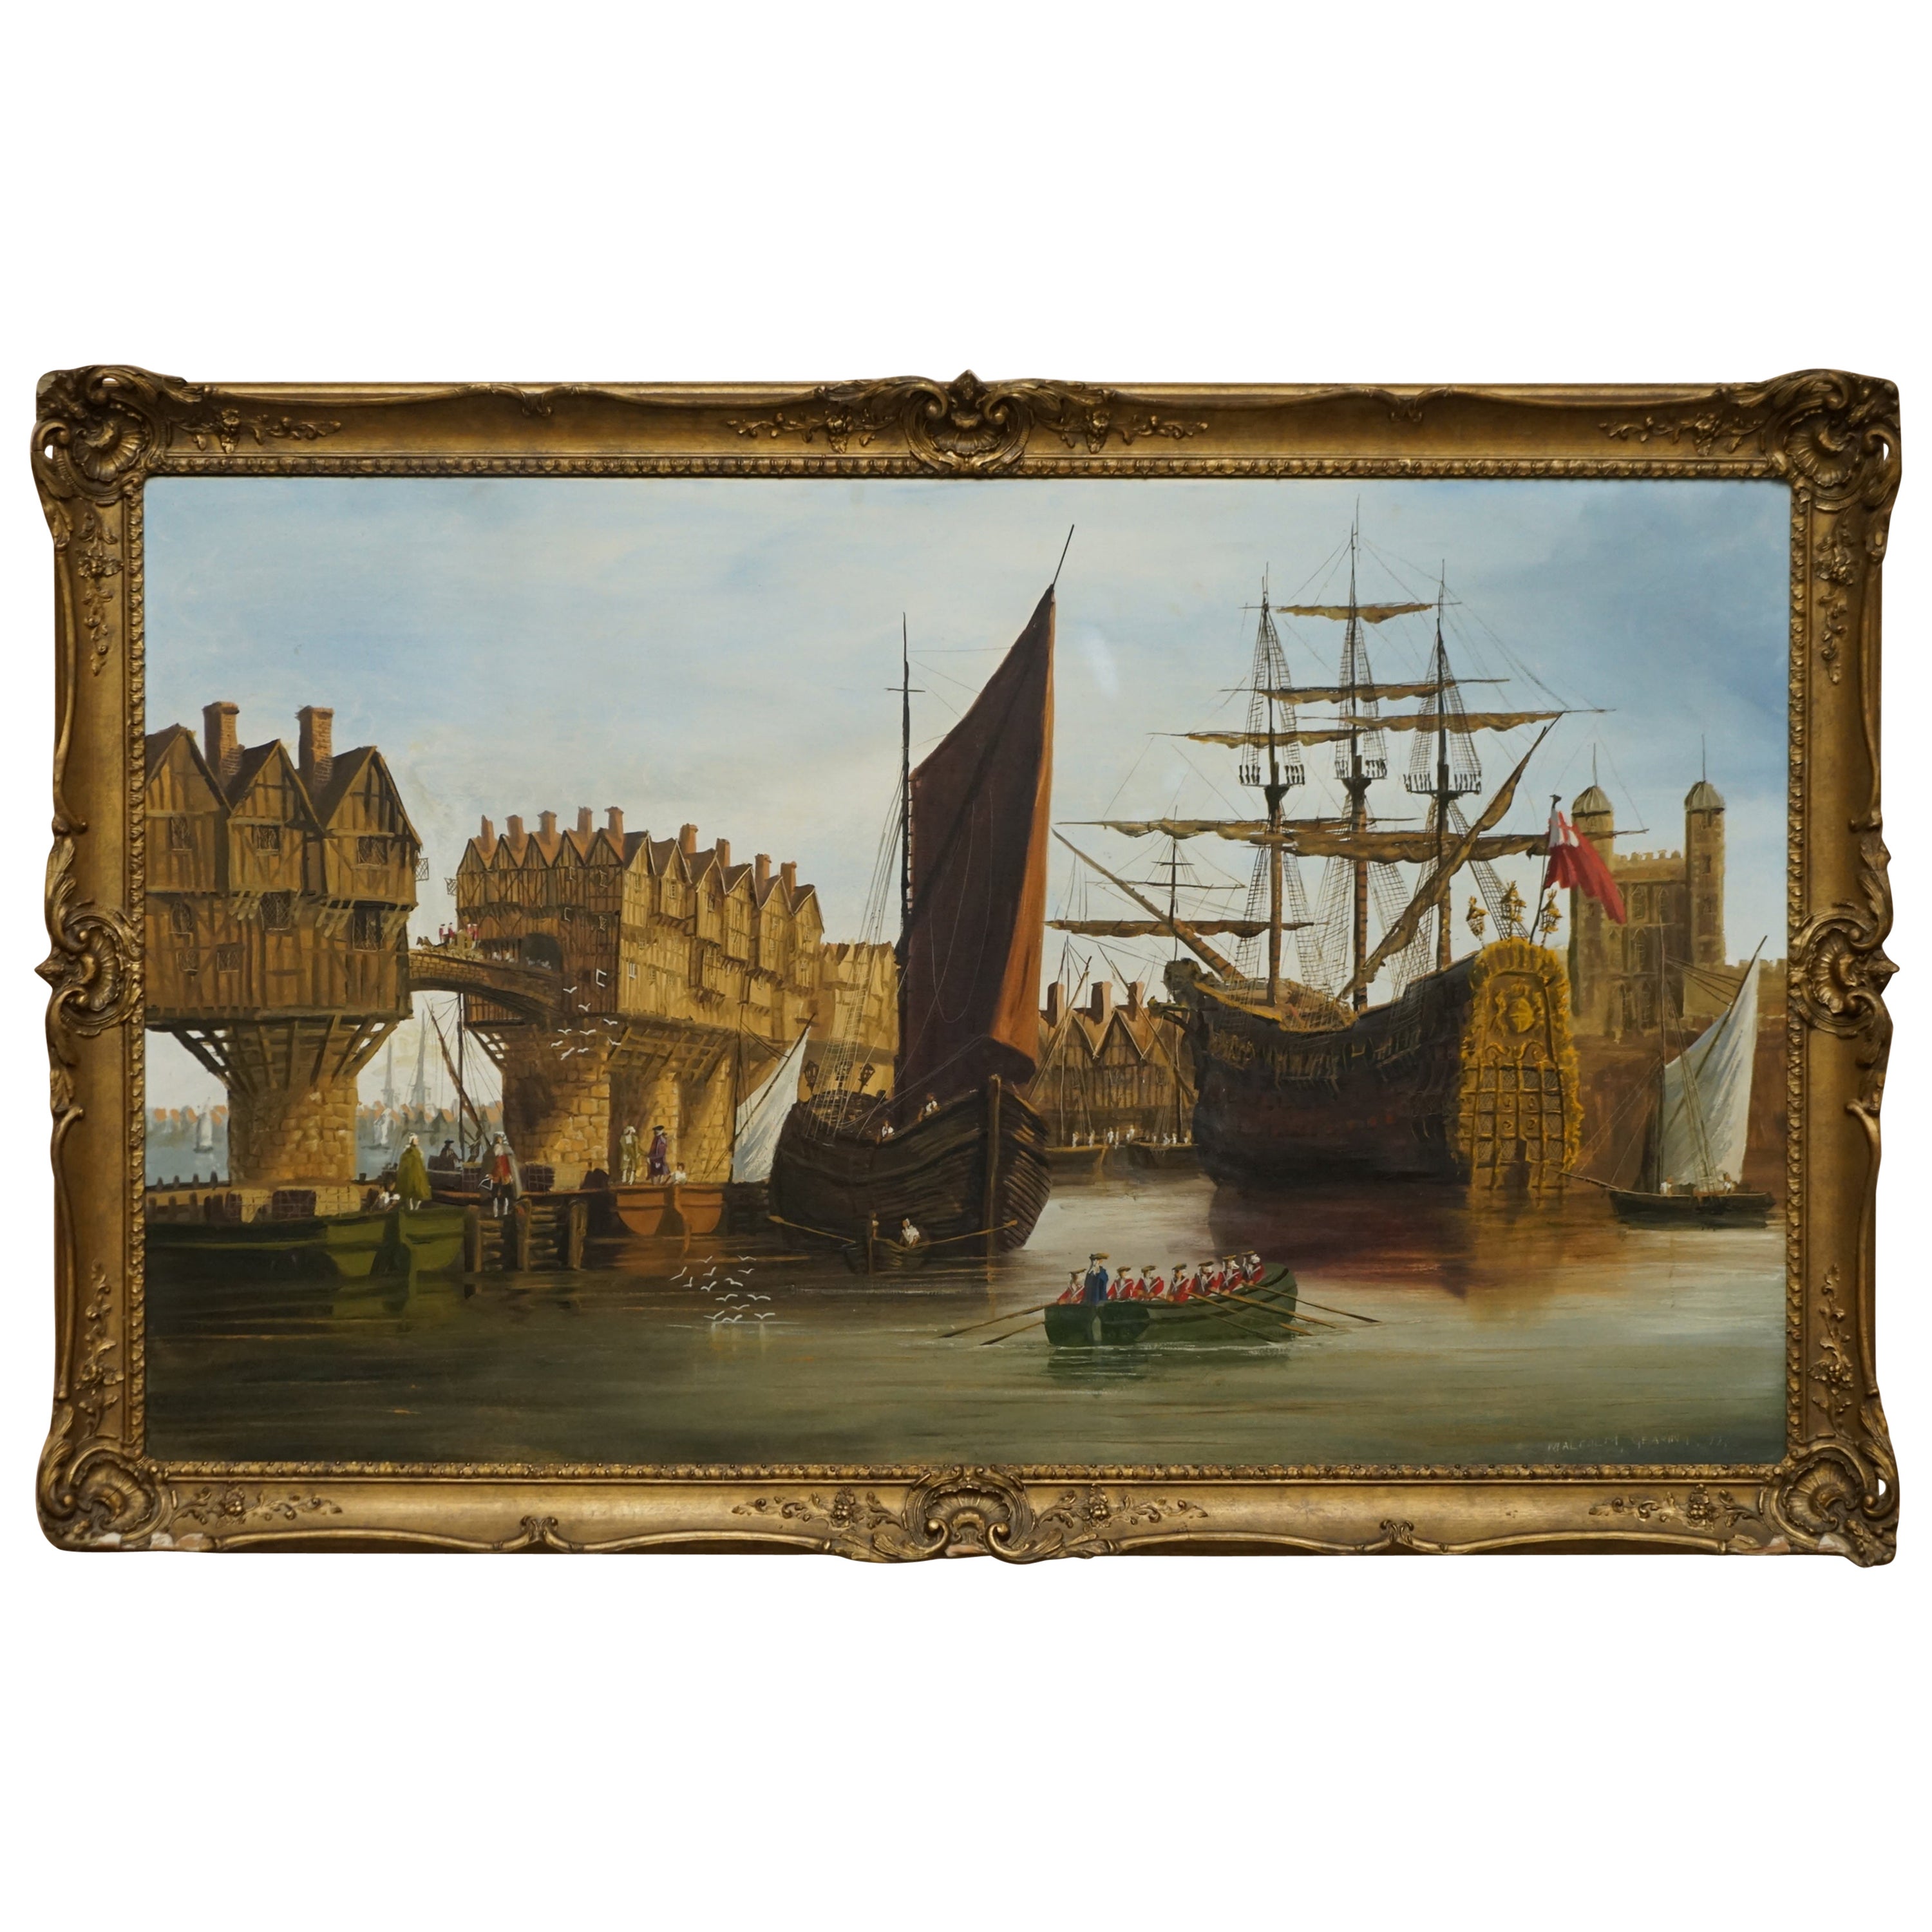 Großes dekoratives Ölgemälde auf Leinwand mit einer viktorianischen Marineszene an der Themse